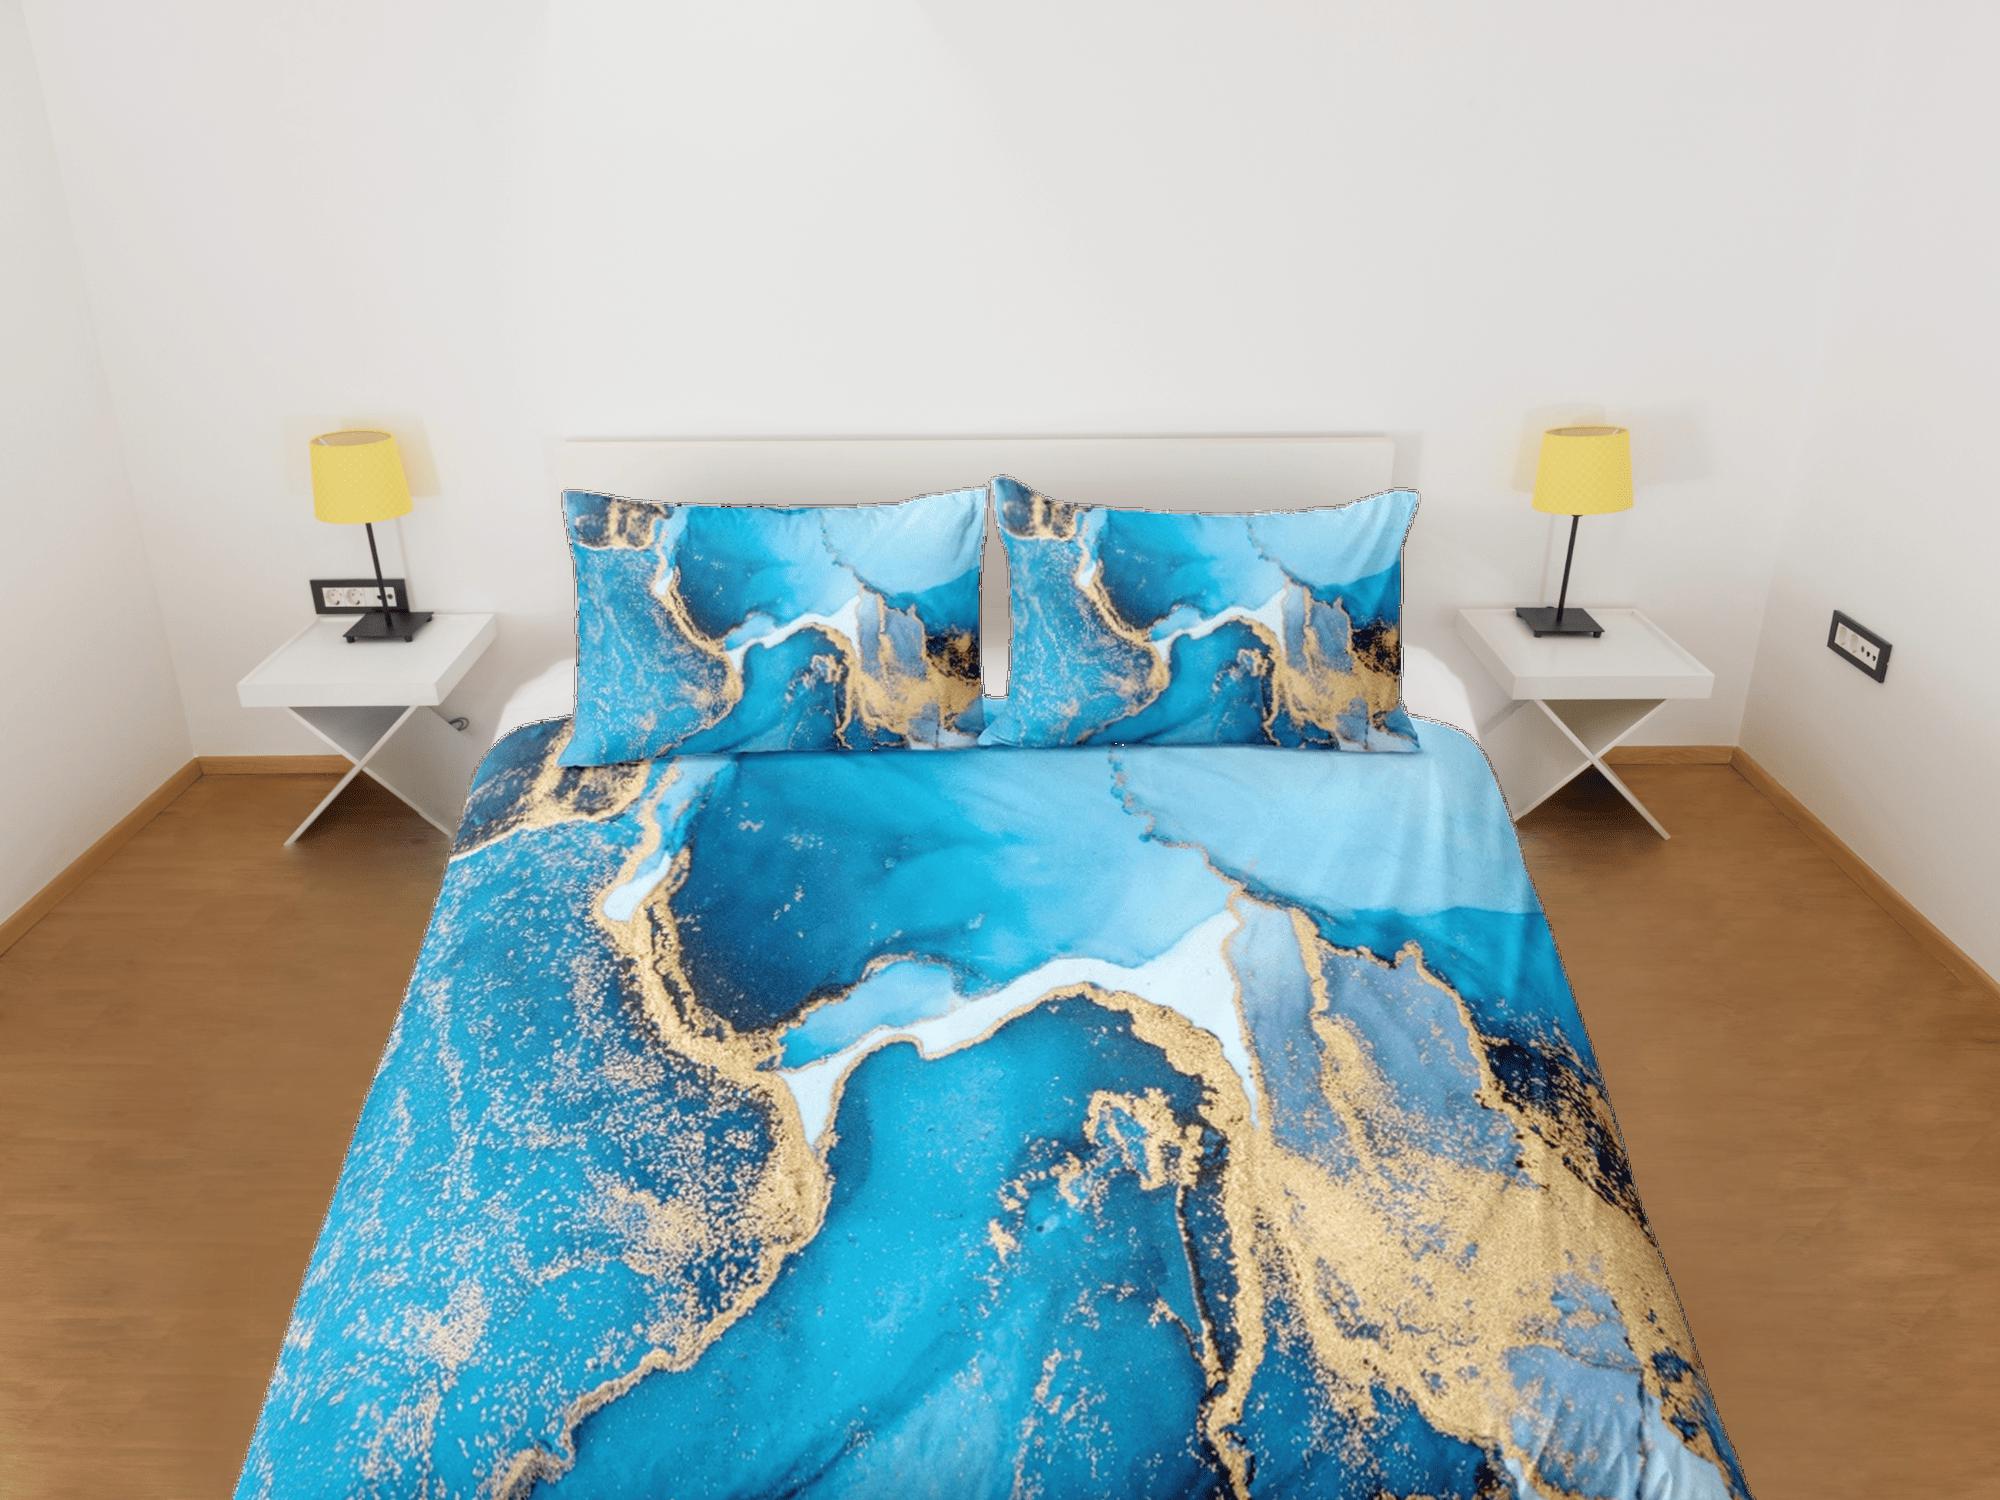 daintyduvet Contemporary bedroom set blue aesthetic duvet cover, luxury duvet gold marble abstract art room decor boho chic bedding set full king queen